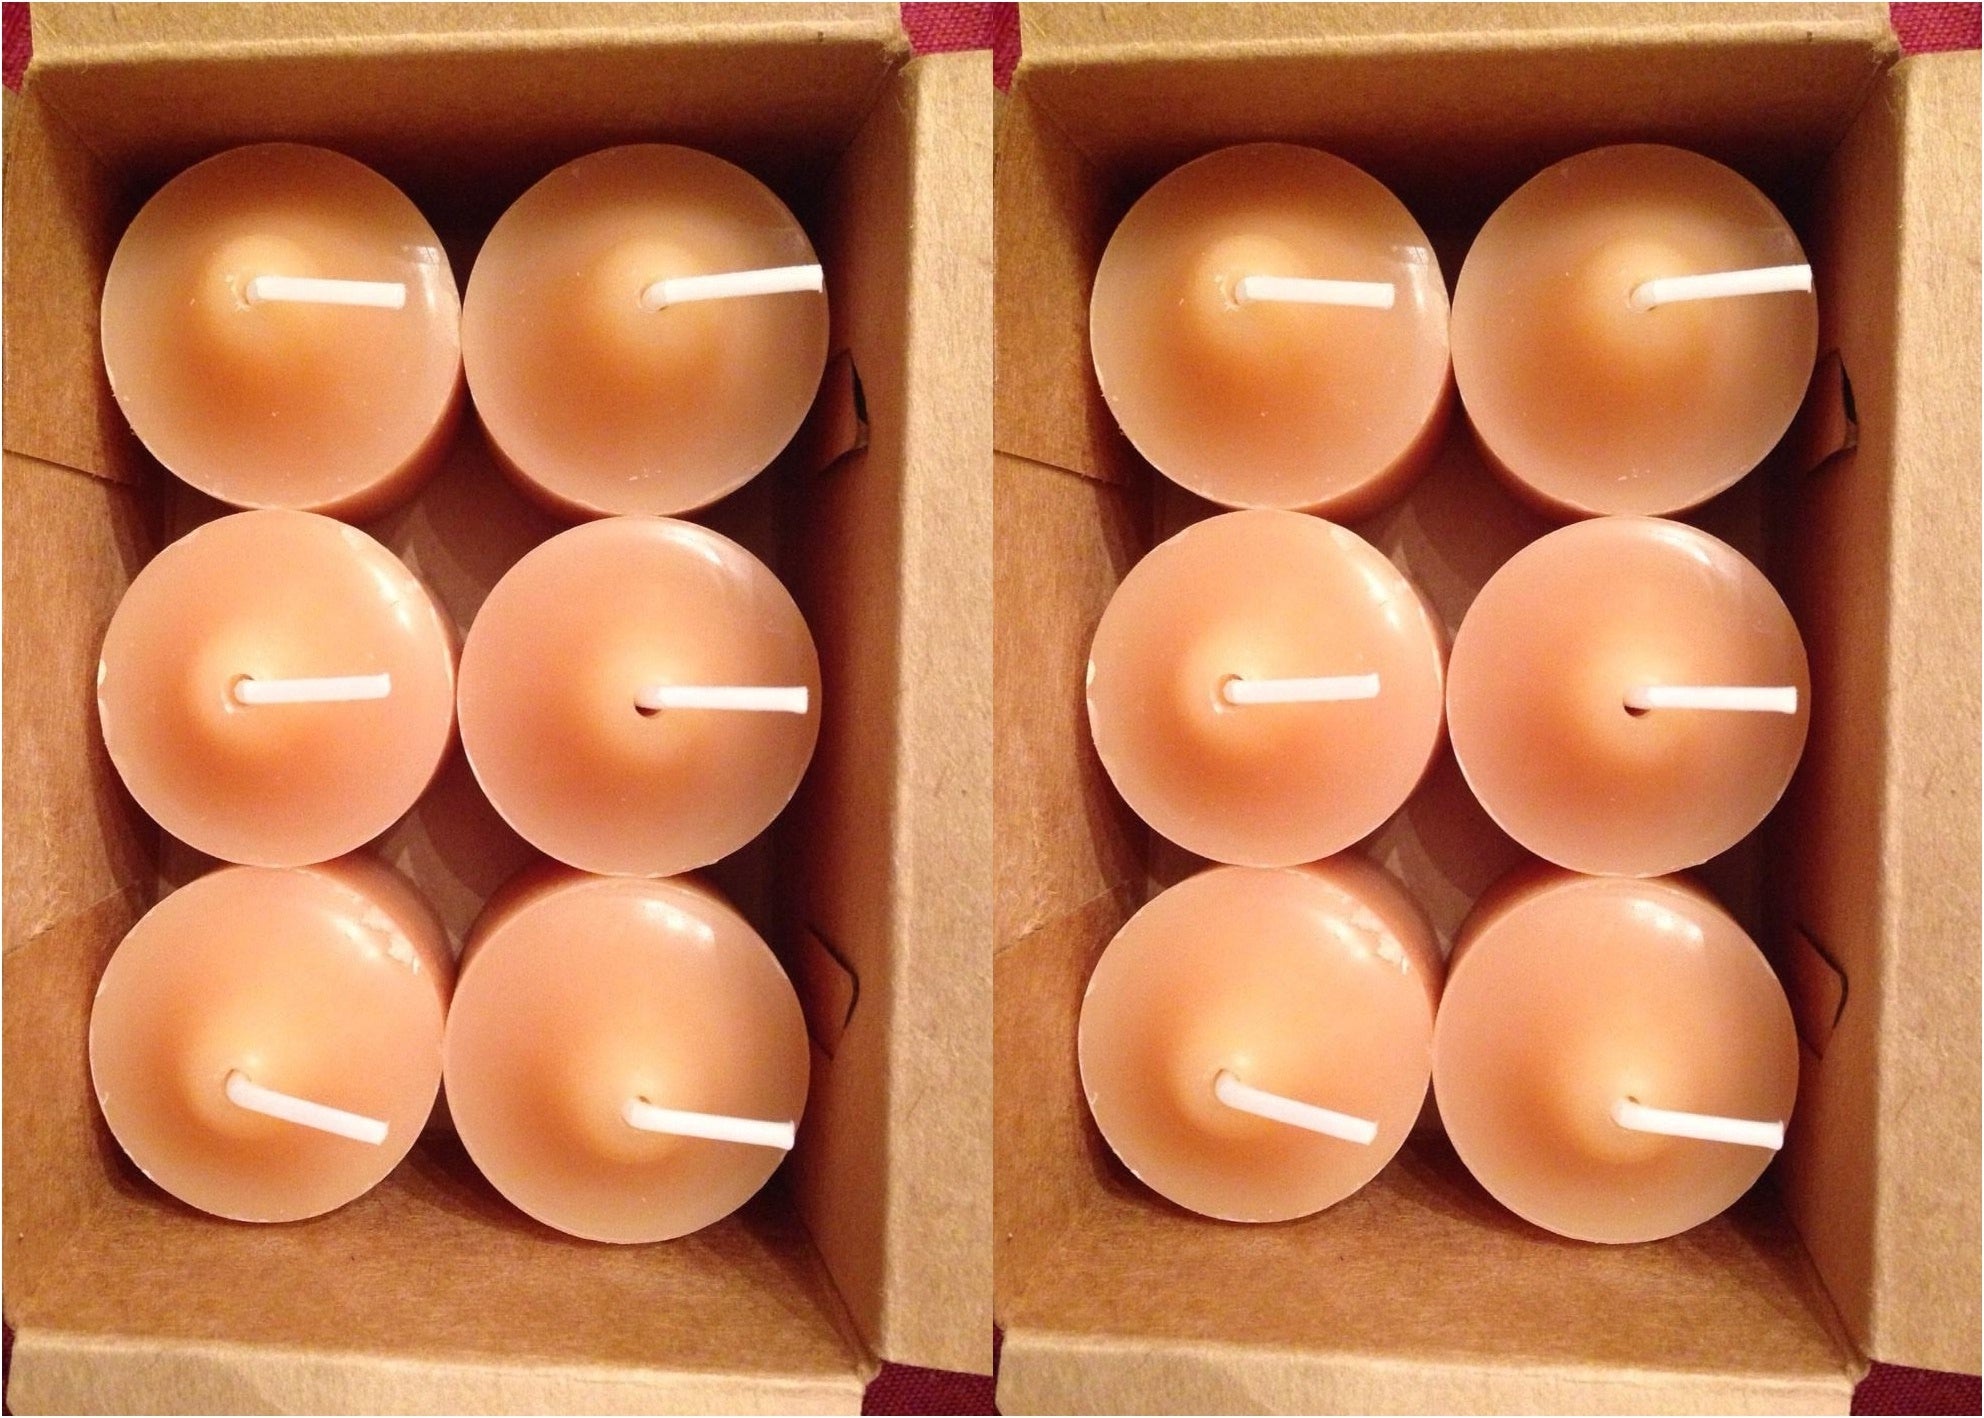 PartyLite 1 DOZEN Votive Wax Candles - 2 BOXES - 6/BOX for 12 VOTIVES APPLE STRUDEL